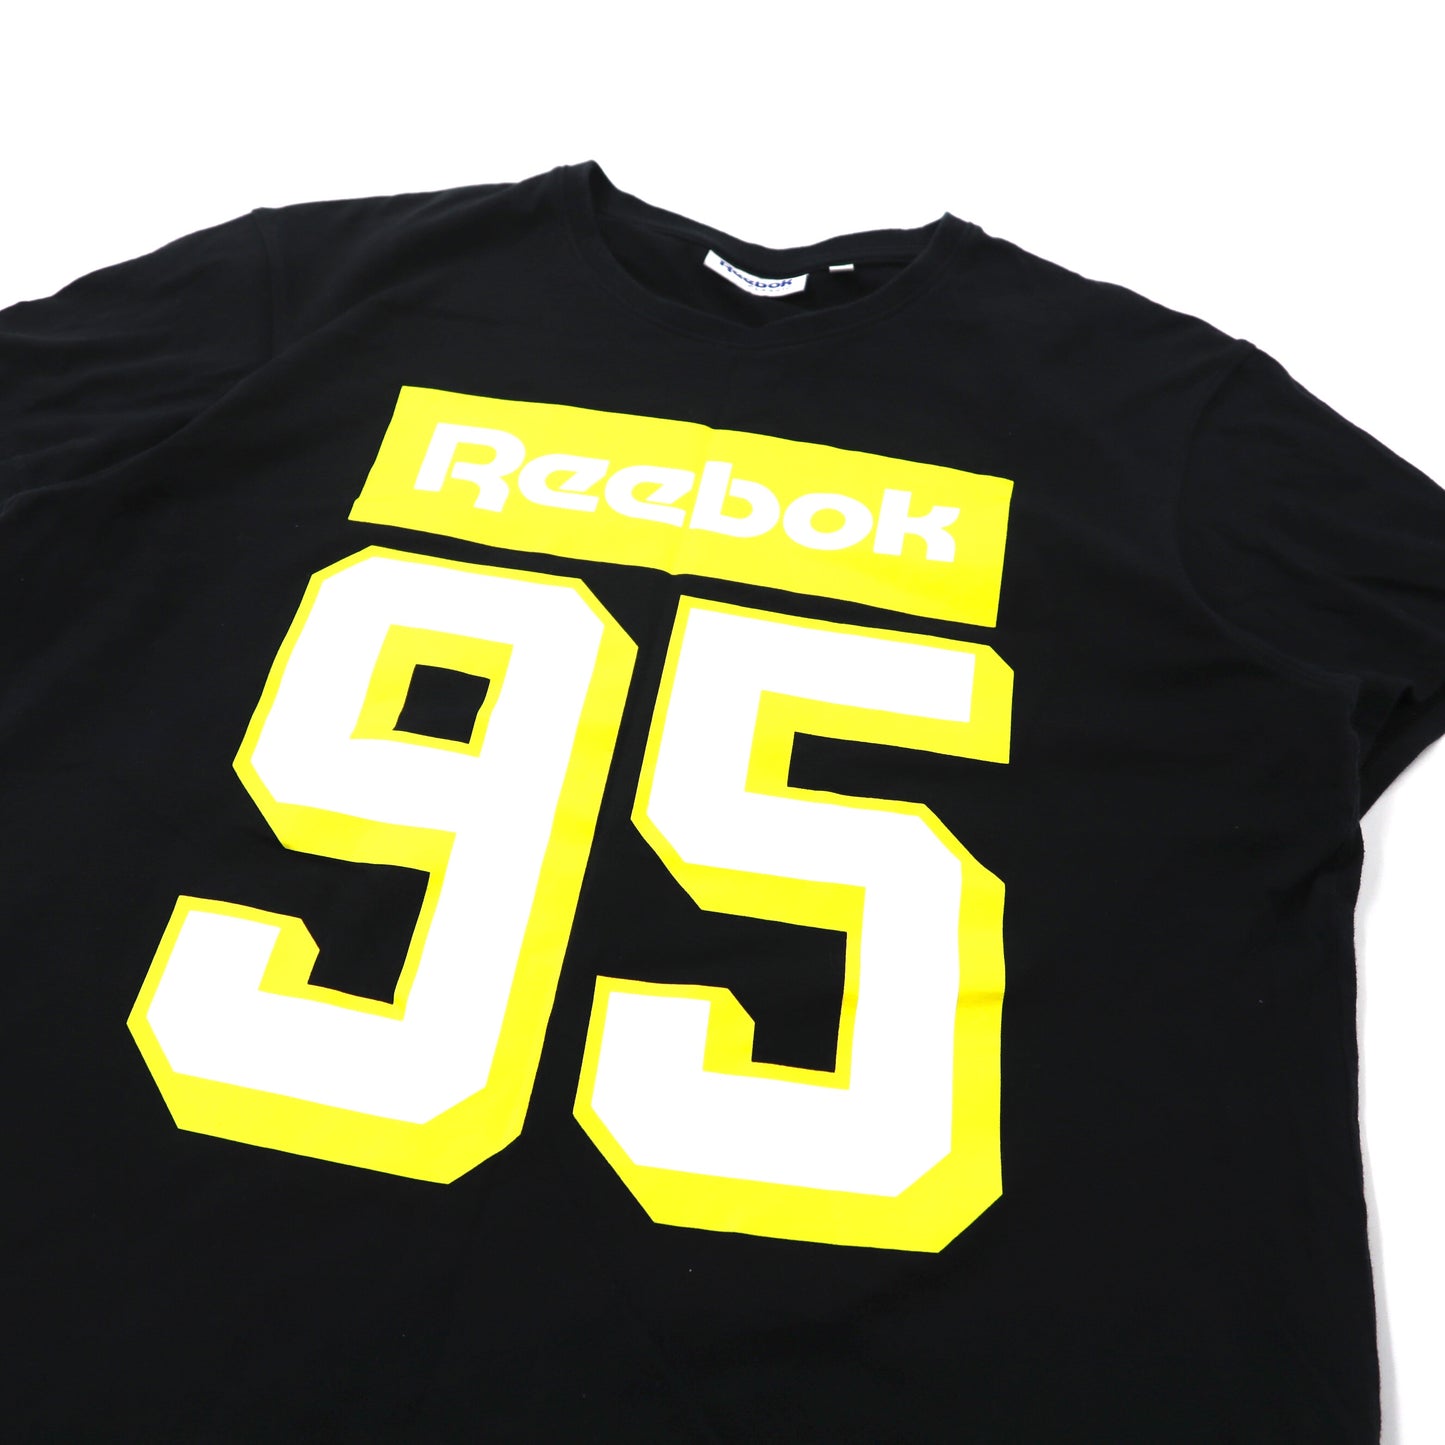 Reebok CLASSIC ナンバリングTシャツ M ブラック コットン